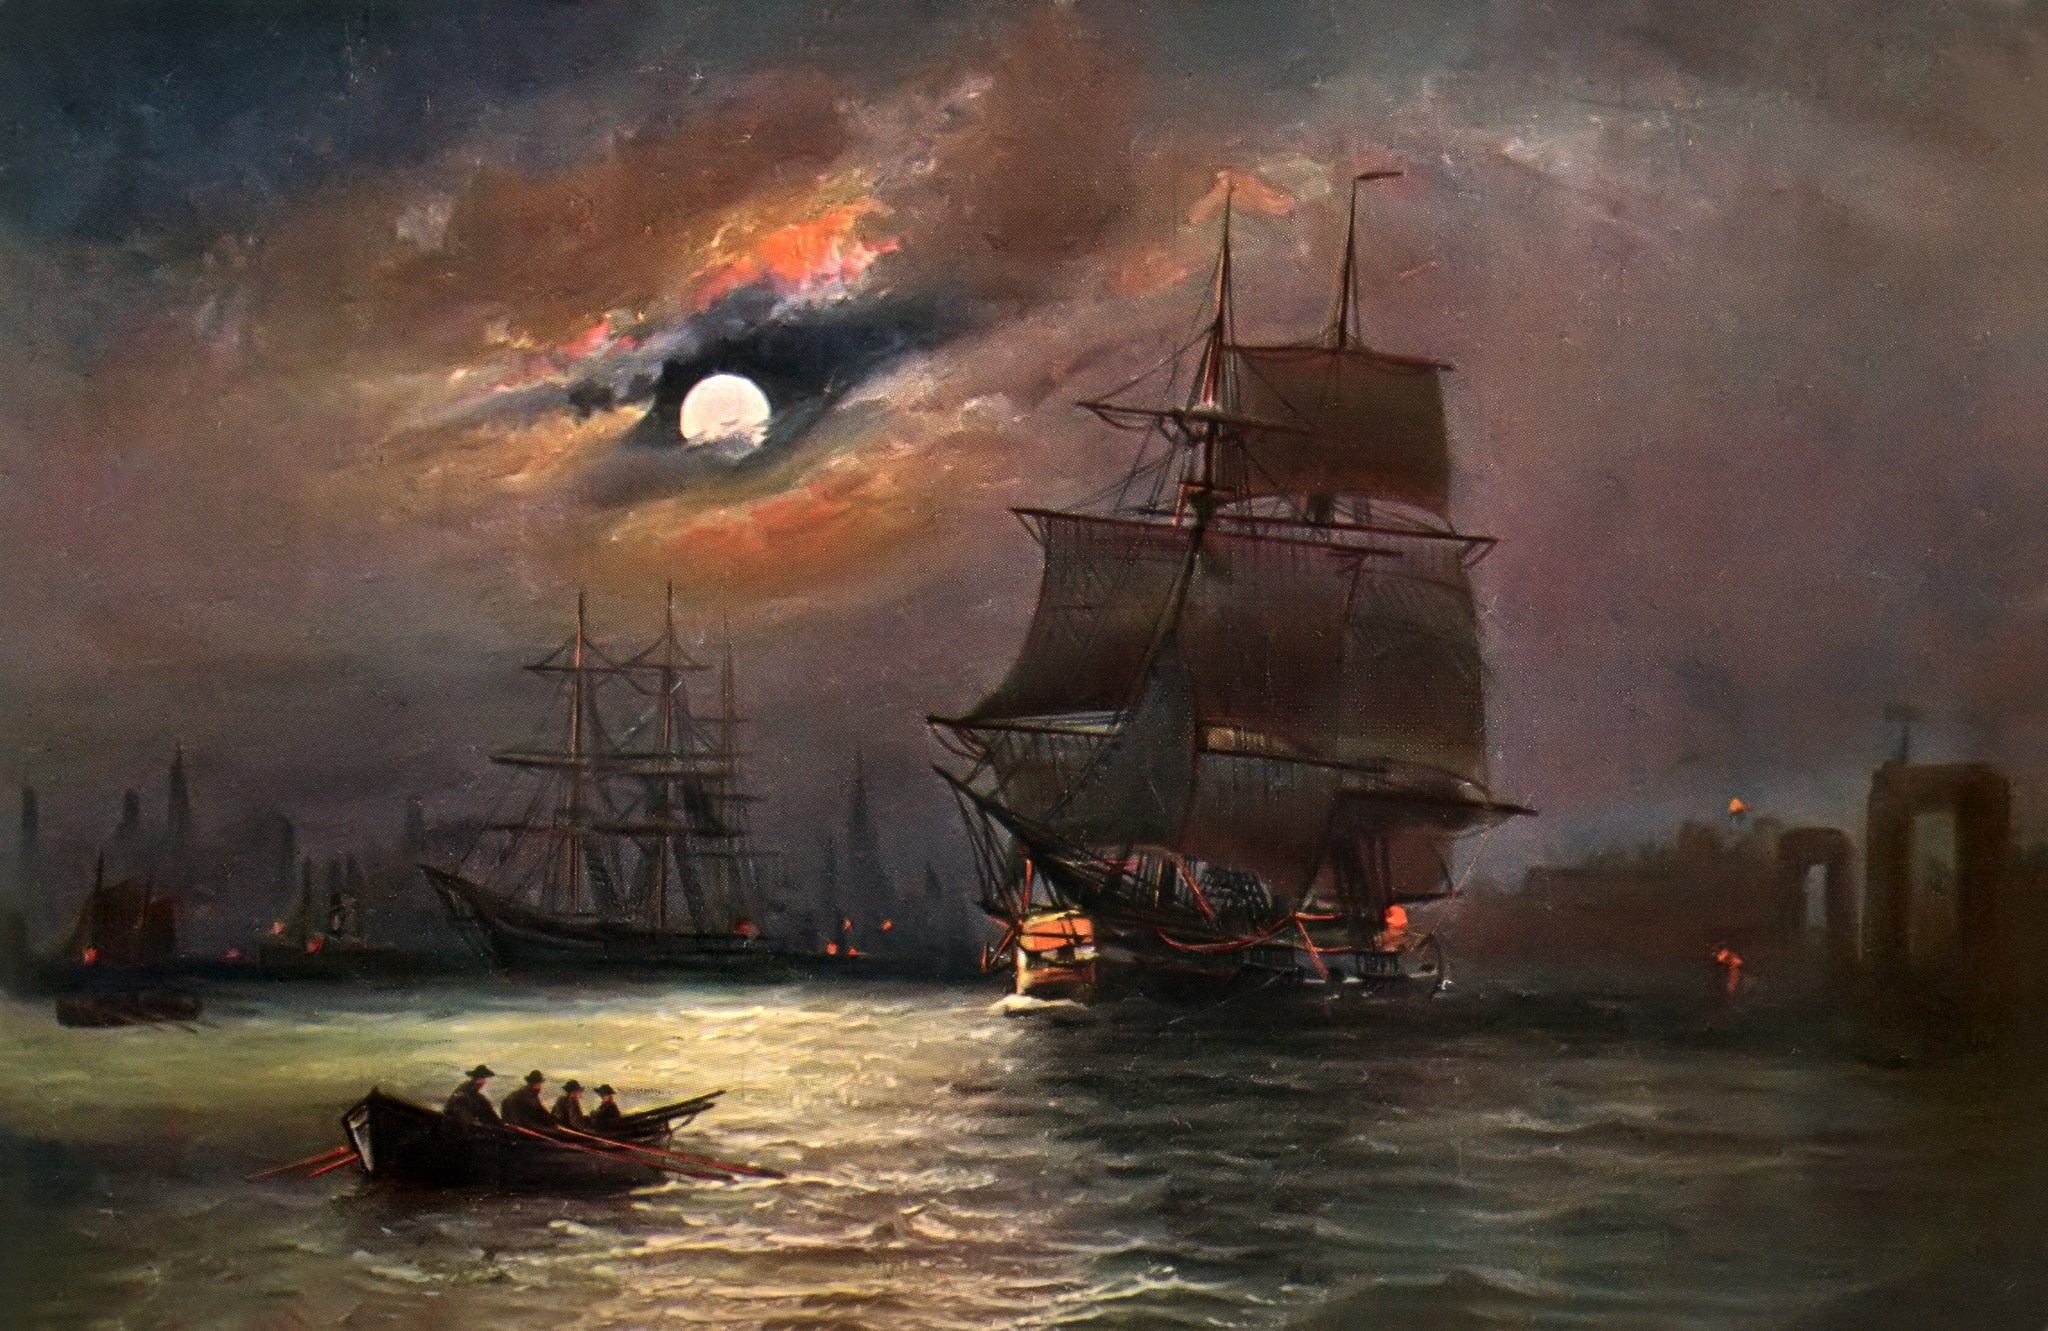 Фотография Alfred Jansen луны Корабли картина Парусные облачно 2048x1331 Луна луной корабль Живопись Облака облако